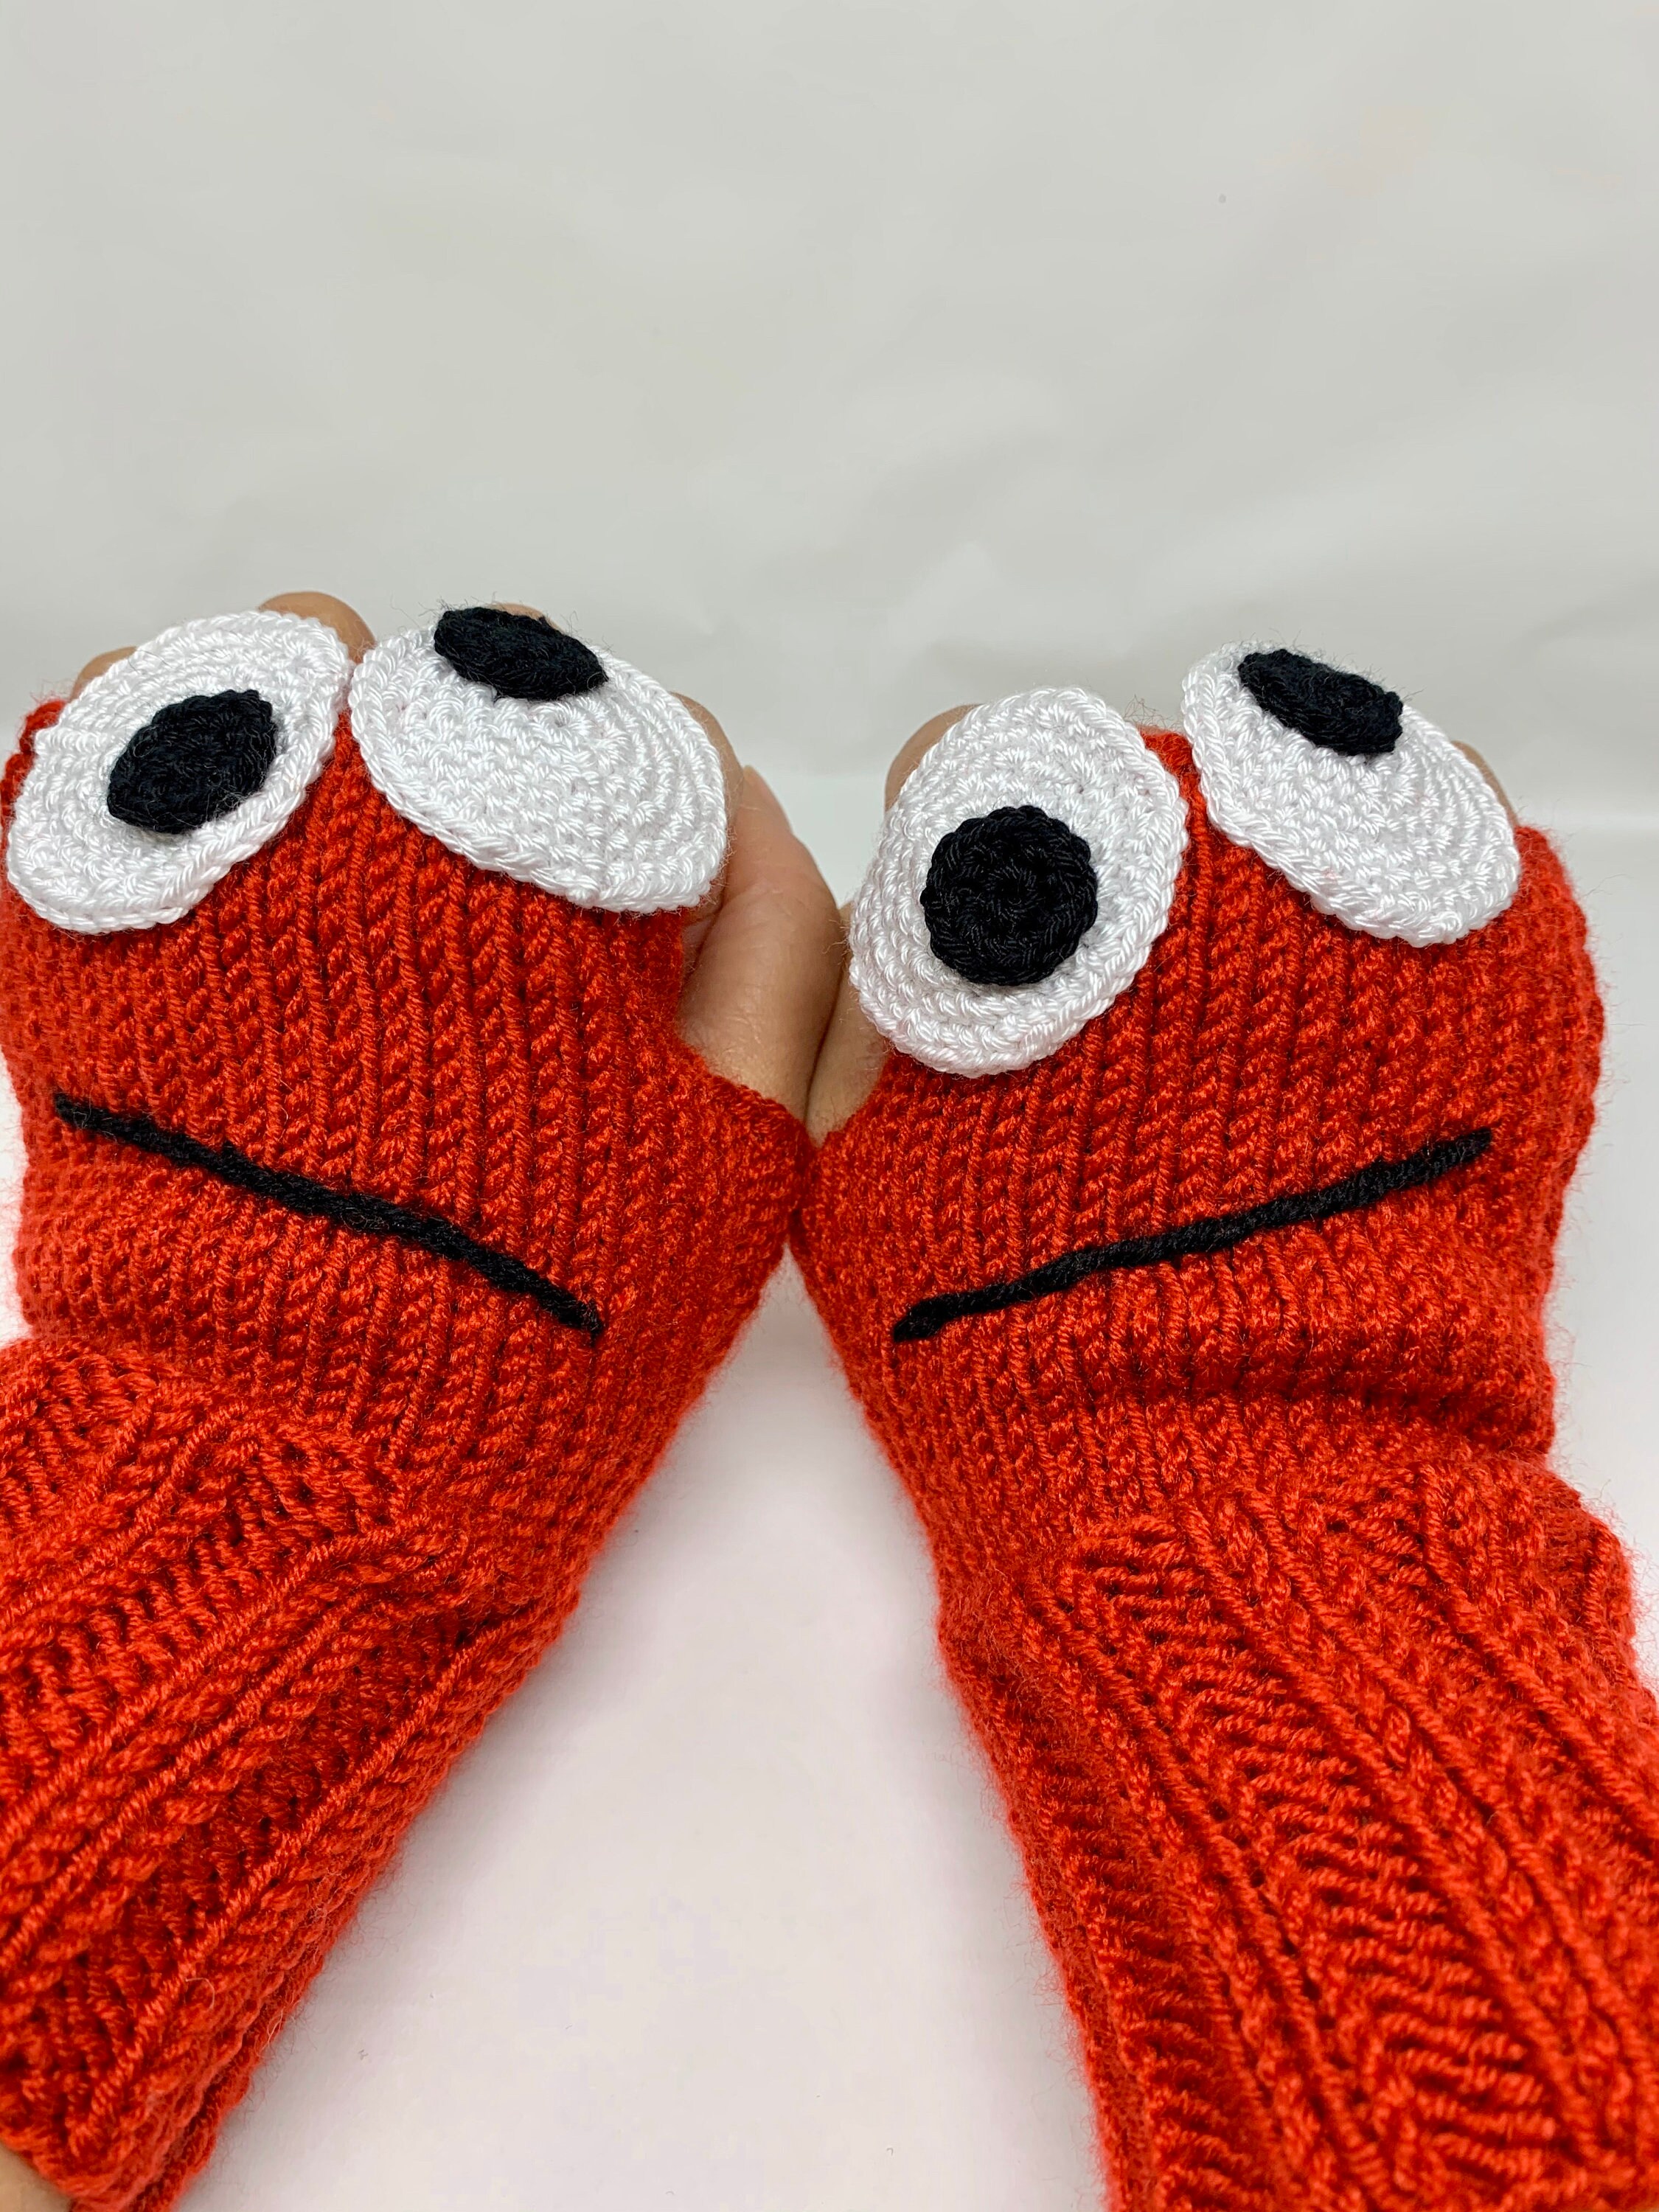 Crochet Red Cartoon Knitted Fingerless Gloves Arm - Etsy UK